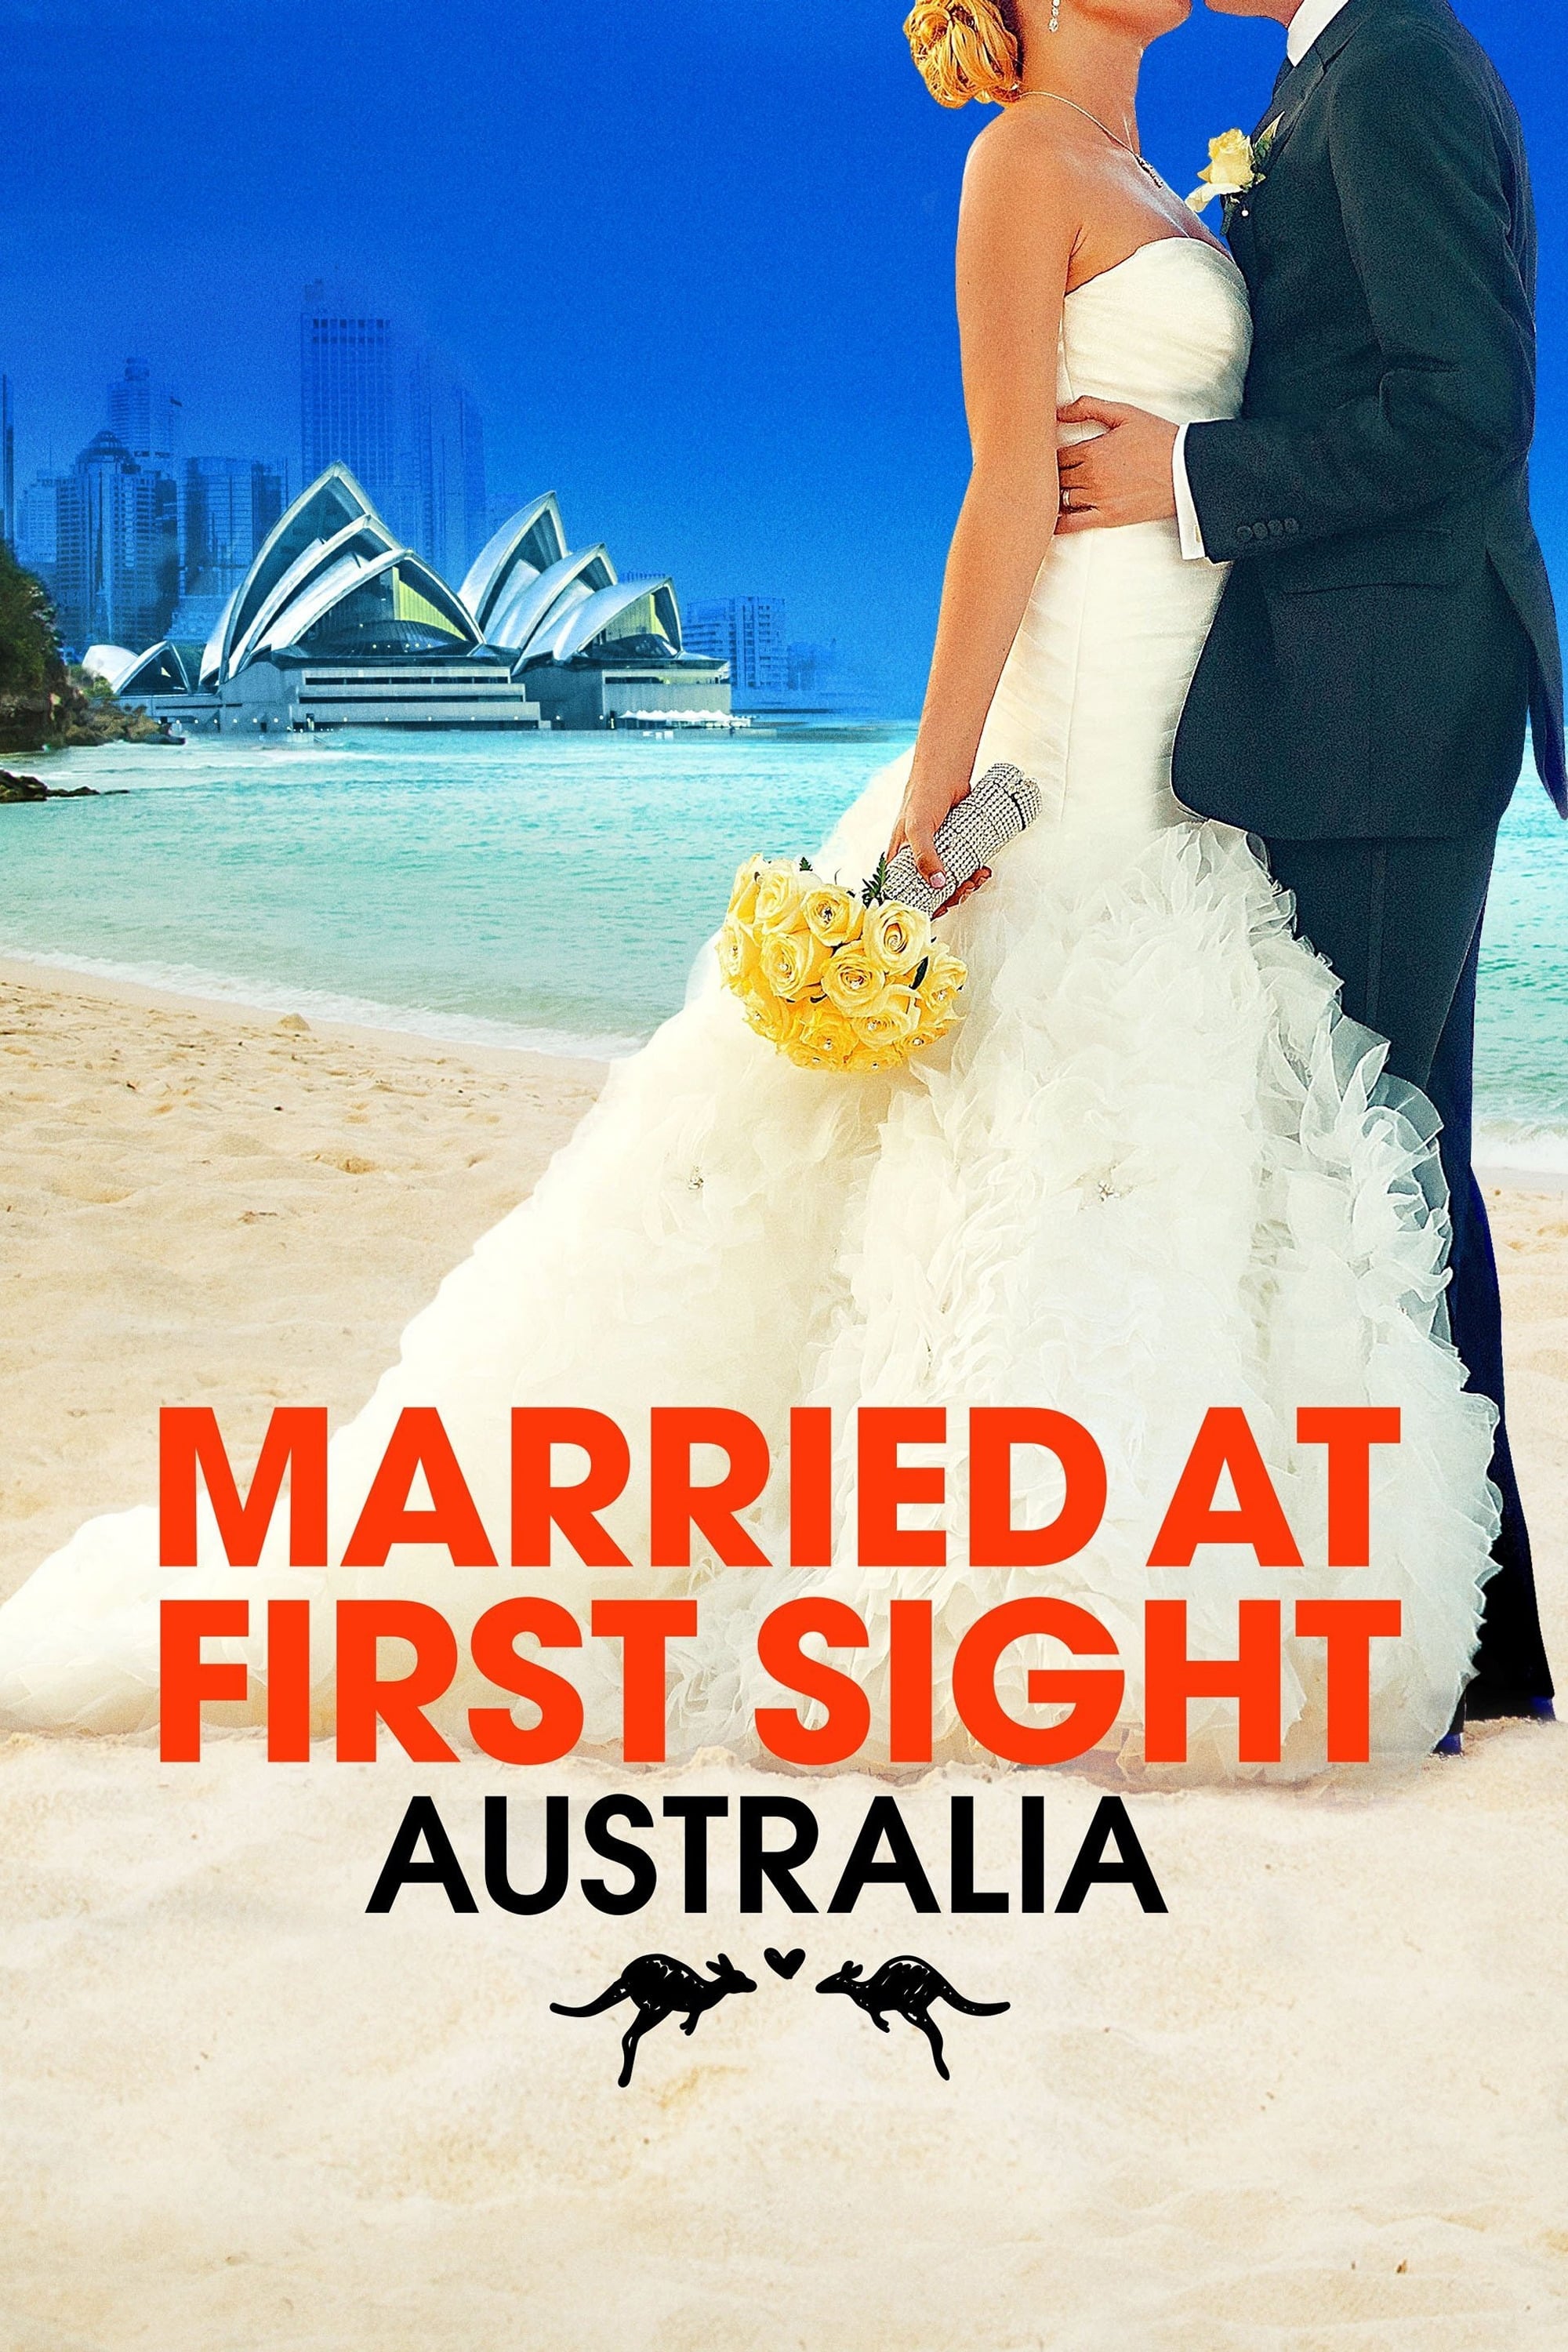 Mariés au premier regard : Australie